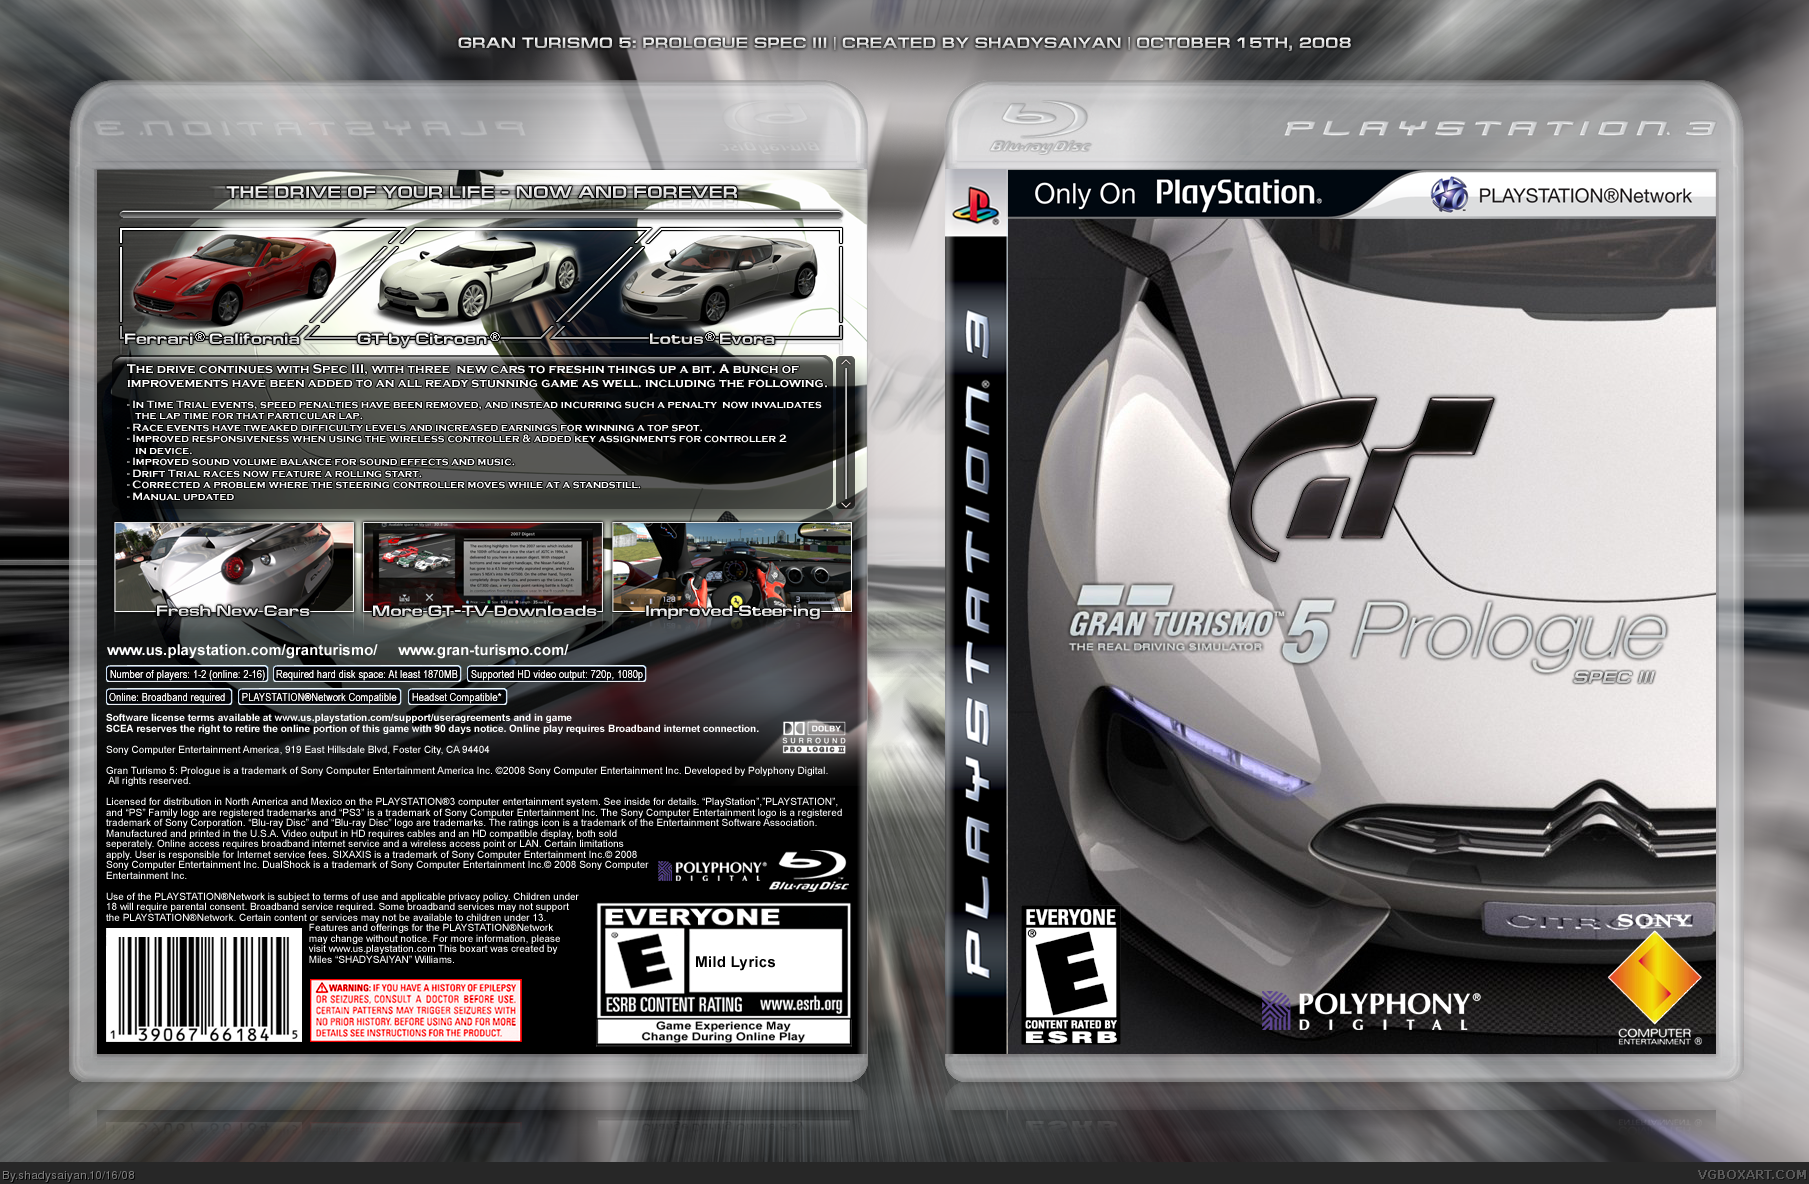 Gran Turismo 5 Prologue spec III. Gran Turismo 5 Prologue (ps3). Gran Turismo 3 Box PS 2. Гран Туризмо 5 на ps3.